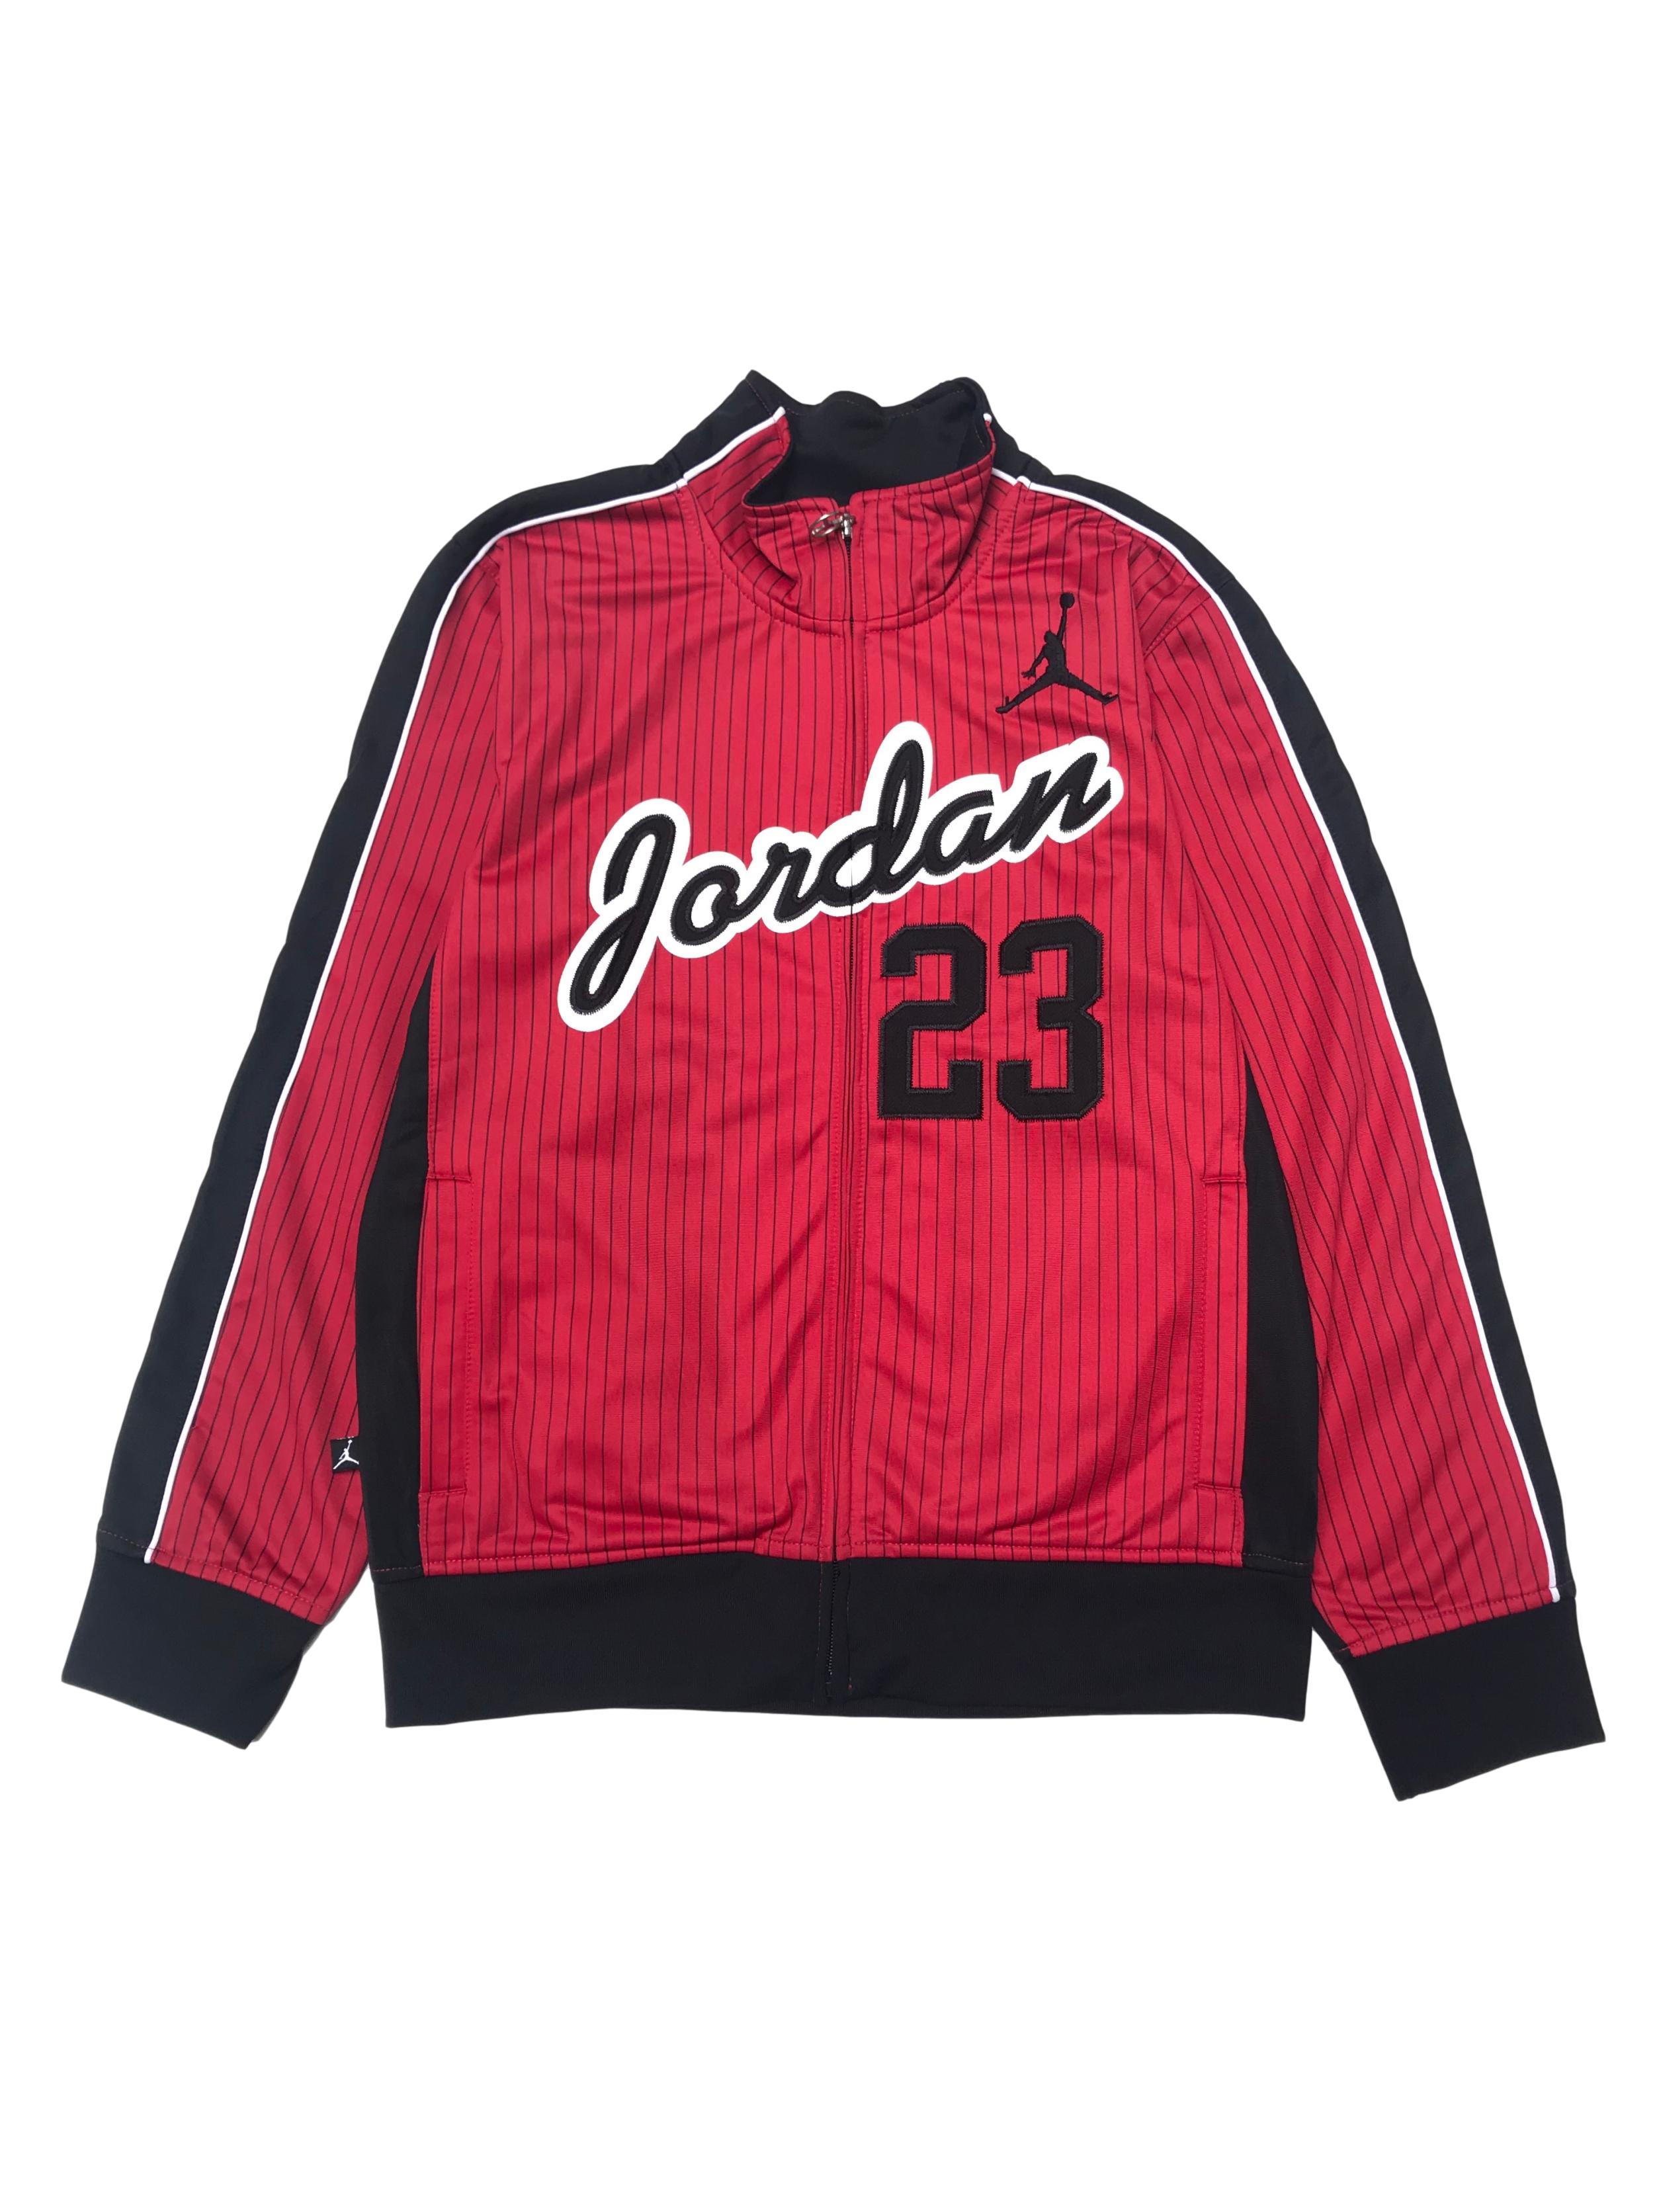 Casaca Jordan material tipo buzo deporte, posterior negro y delantero rojo con líneas y aplicaciones bordadas. Es Size Junior pero da a una S